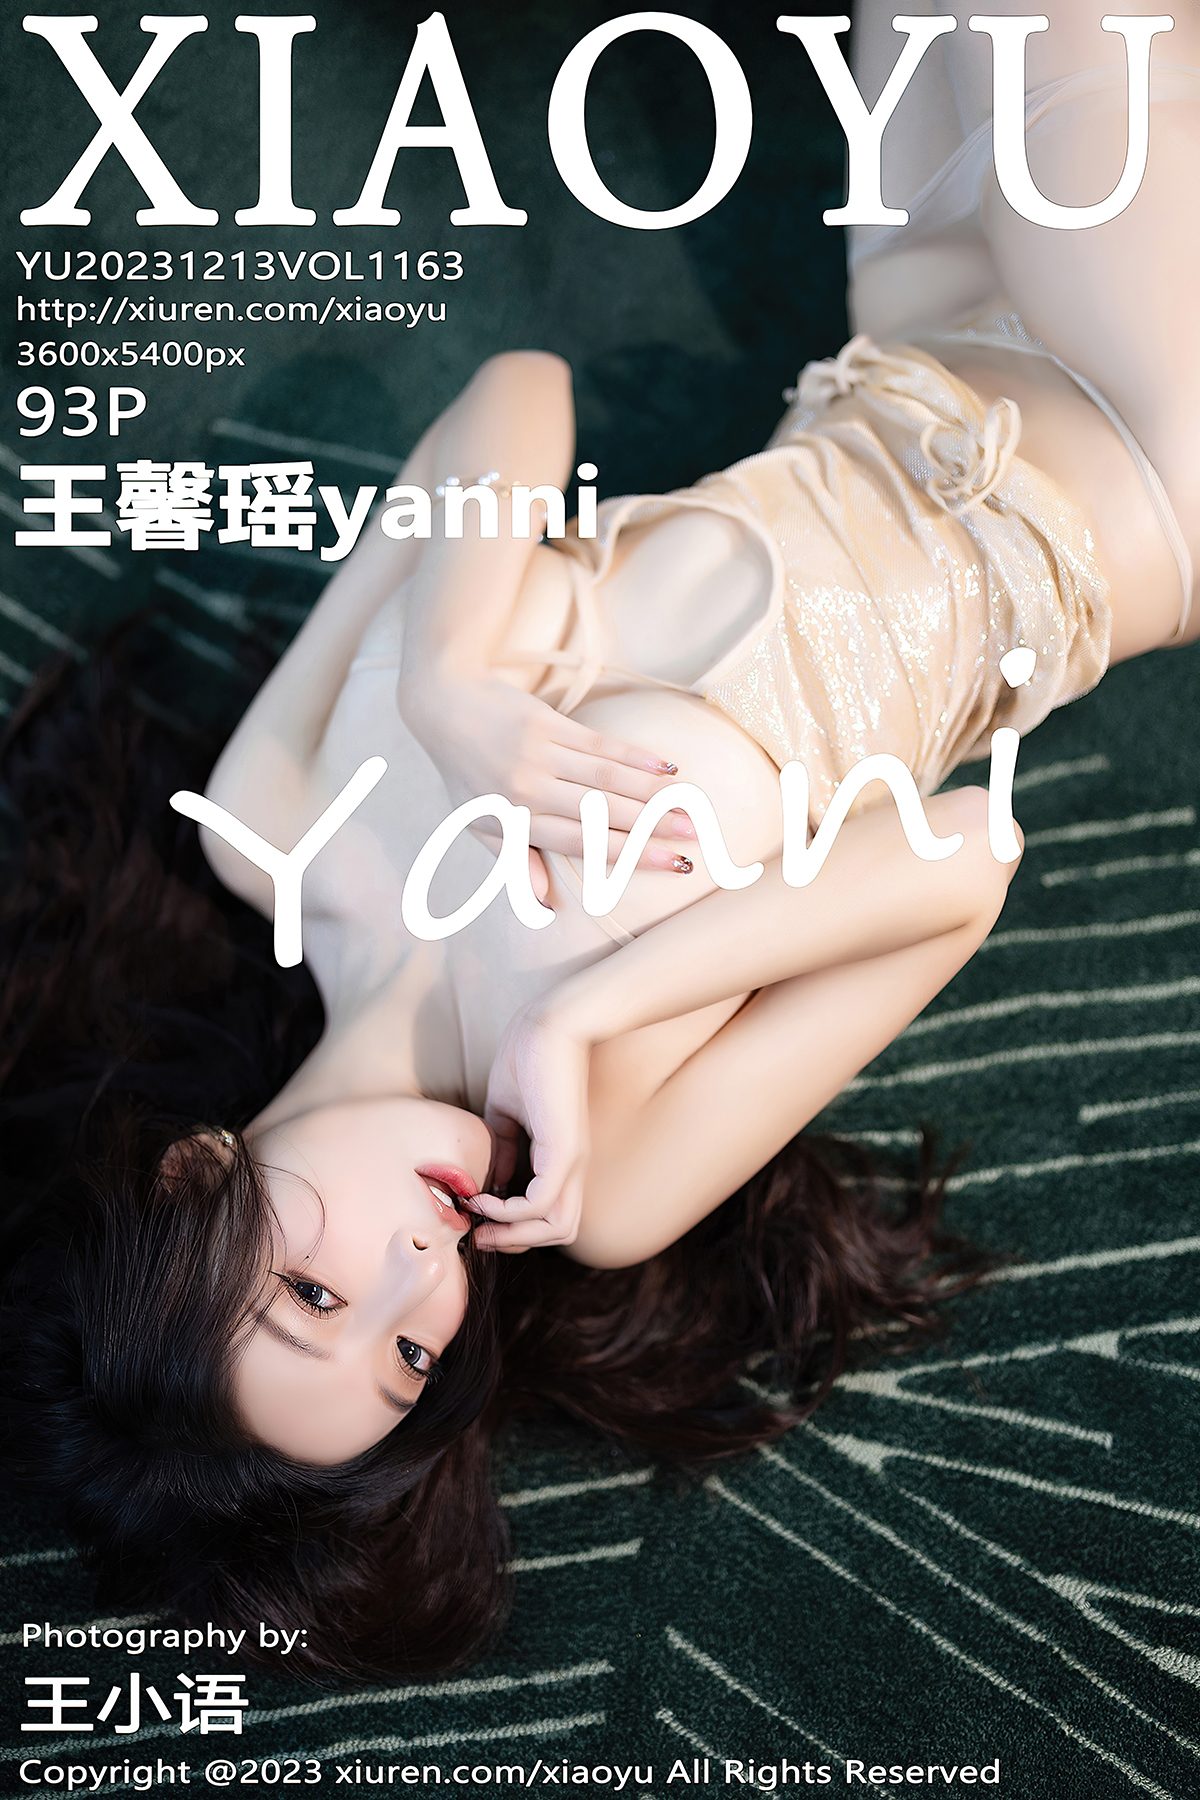 XiaoYu语画界 Vol 1163 Wang Xin Yao Yanni 0035 2380913565.jpg